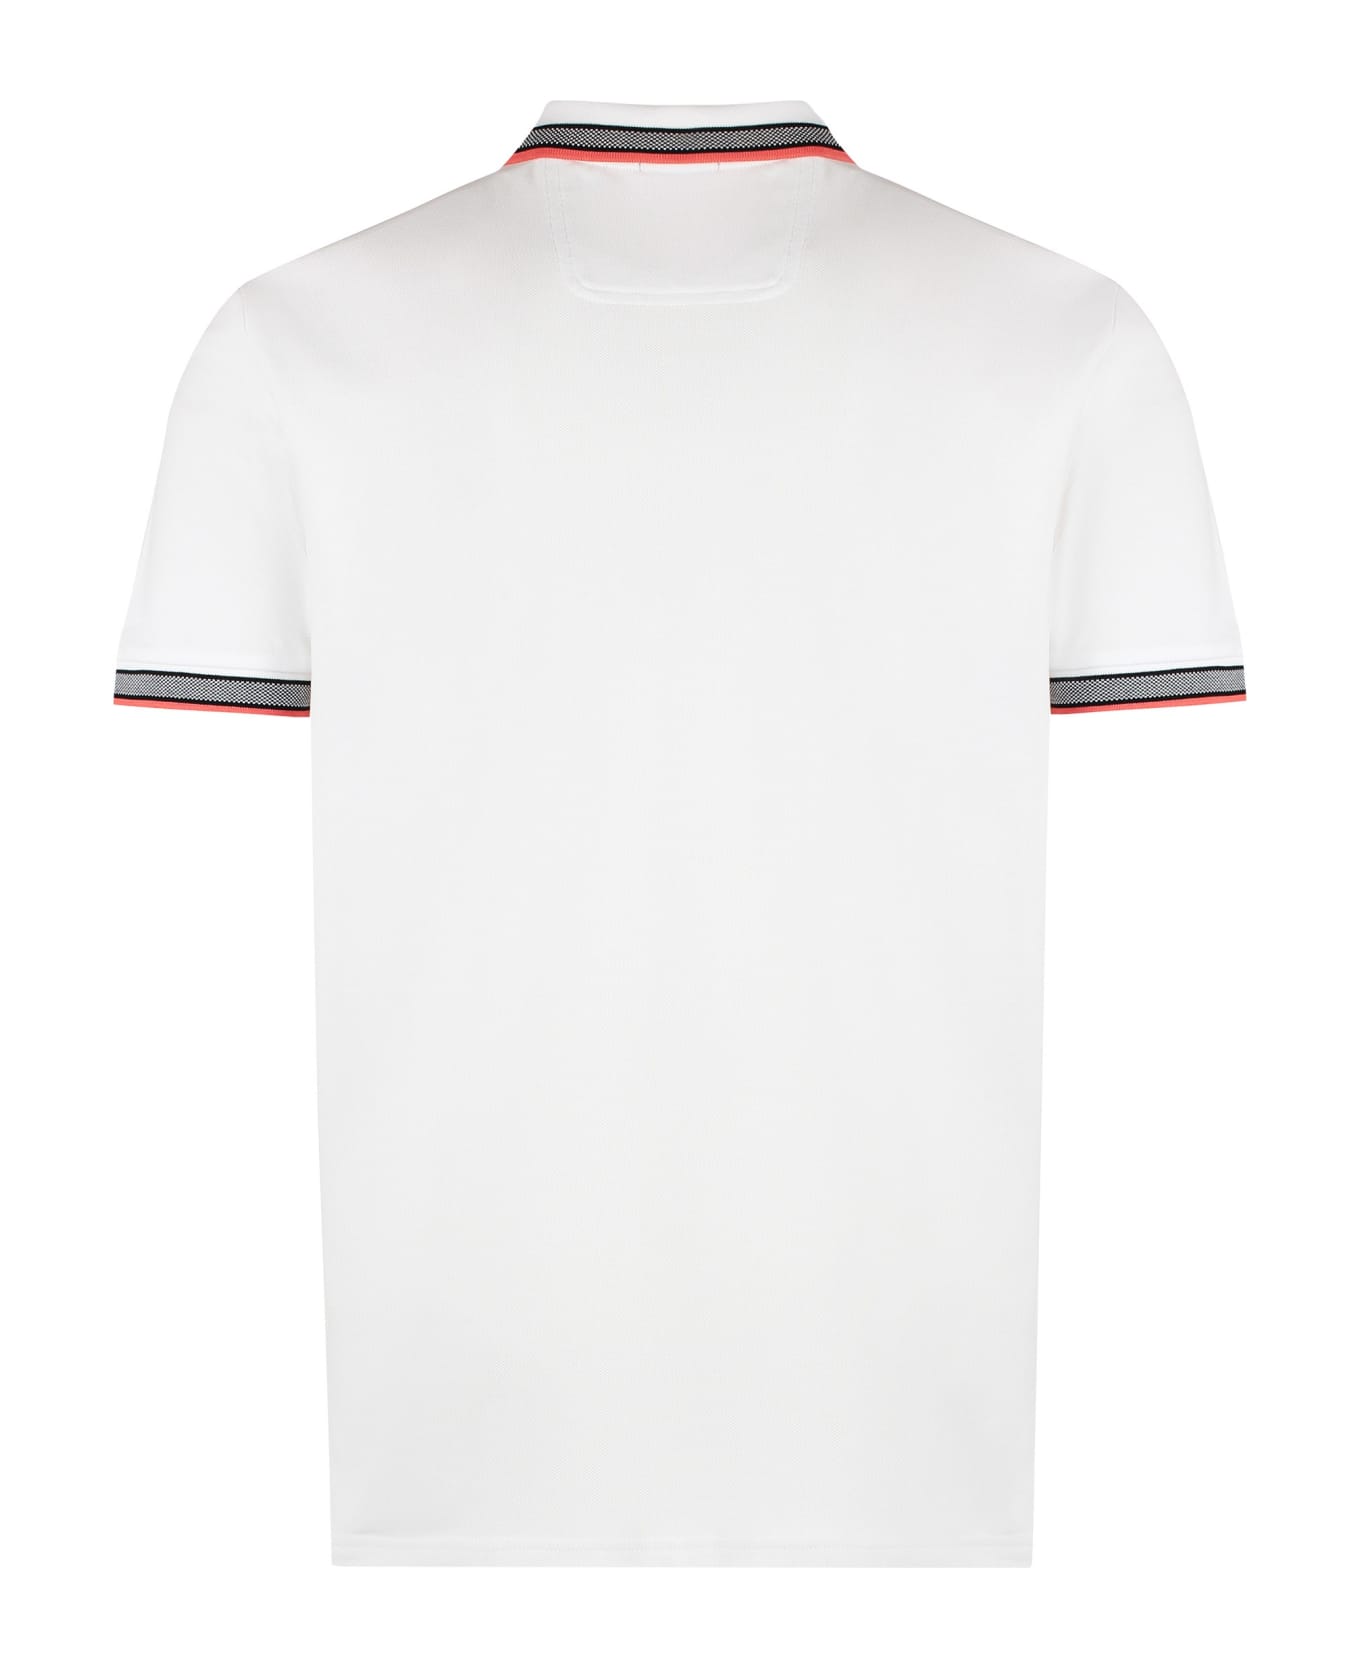 Hugo Boss Cotton-piqué Polo Shirt - White